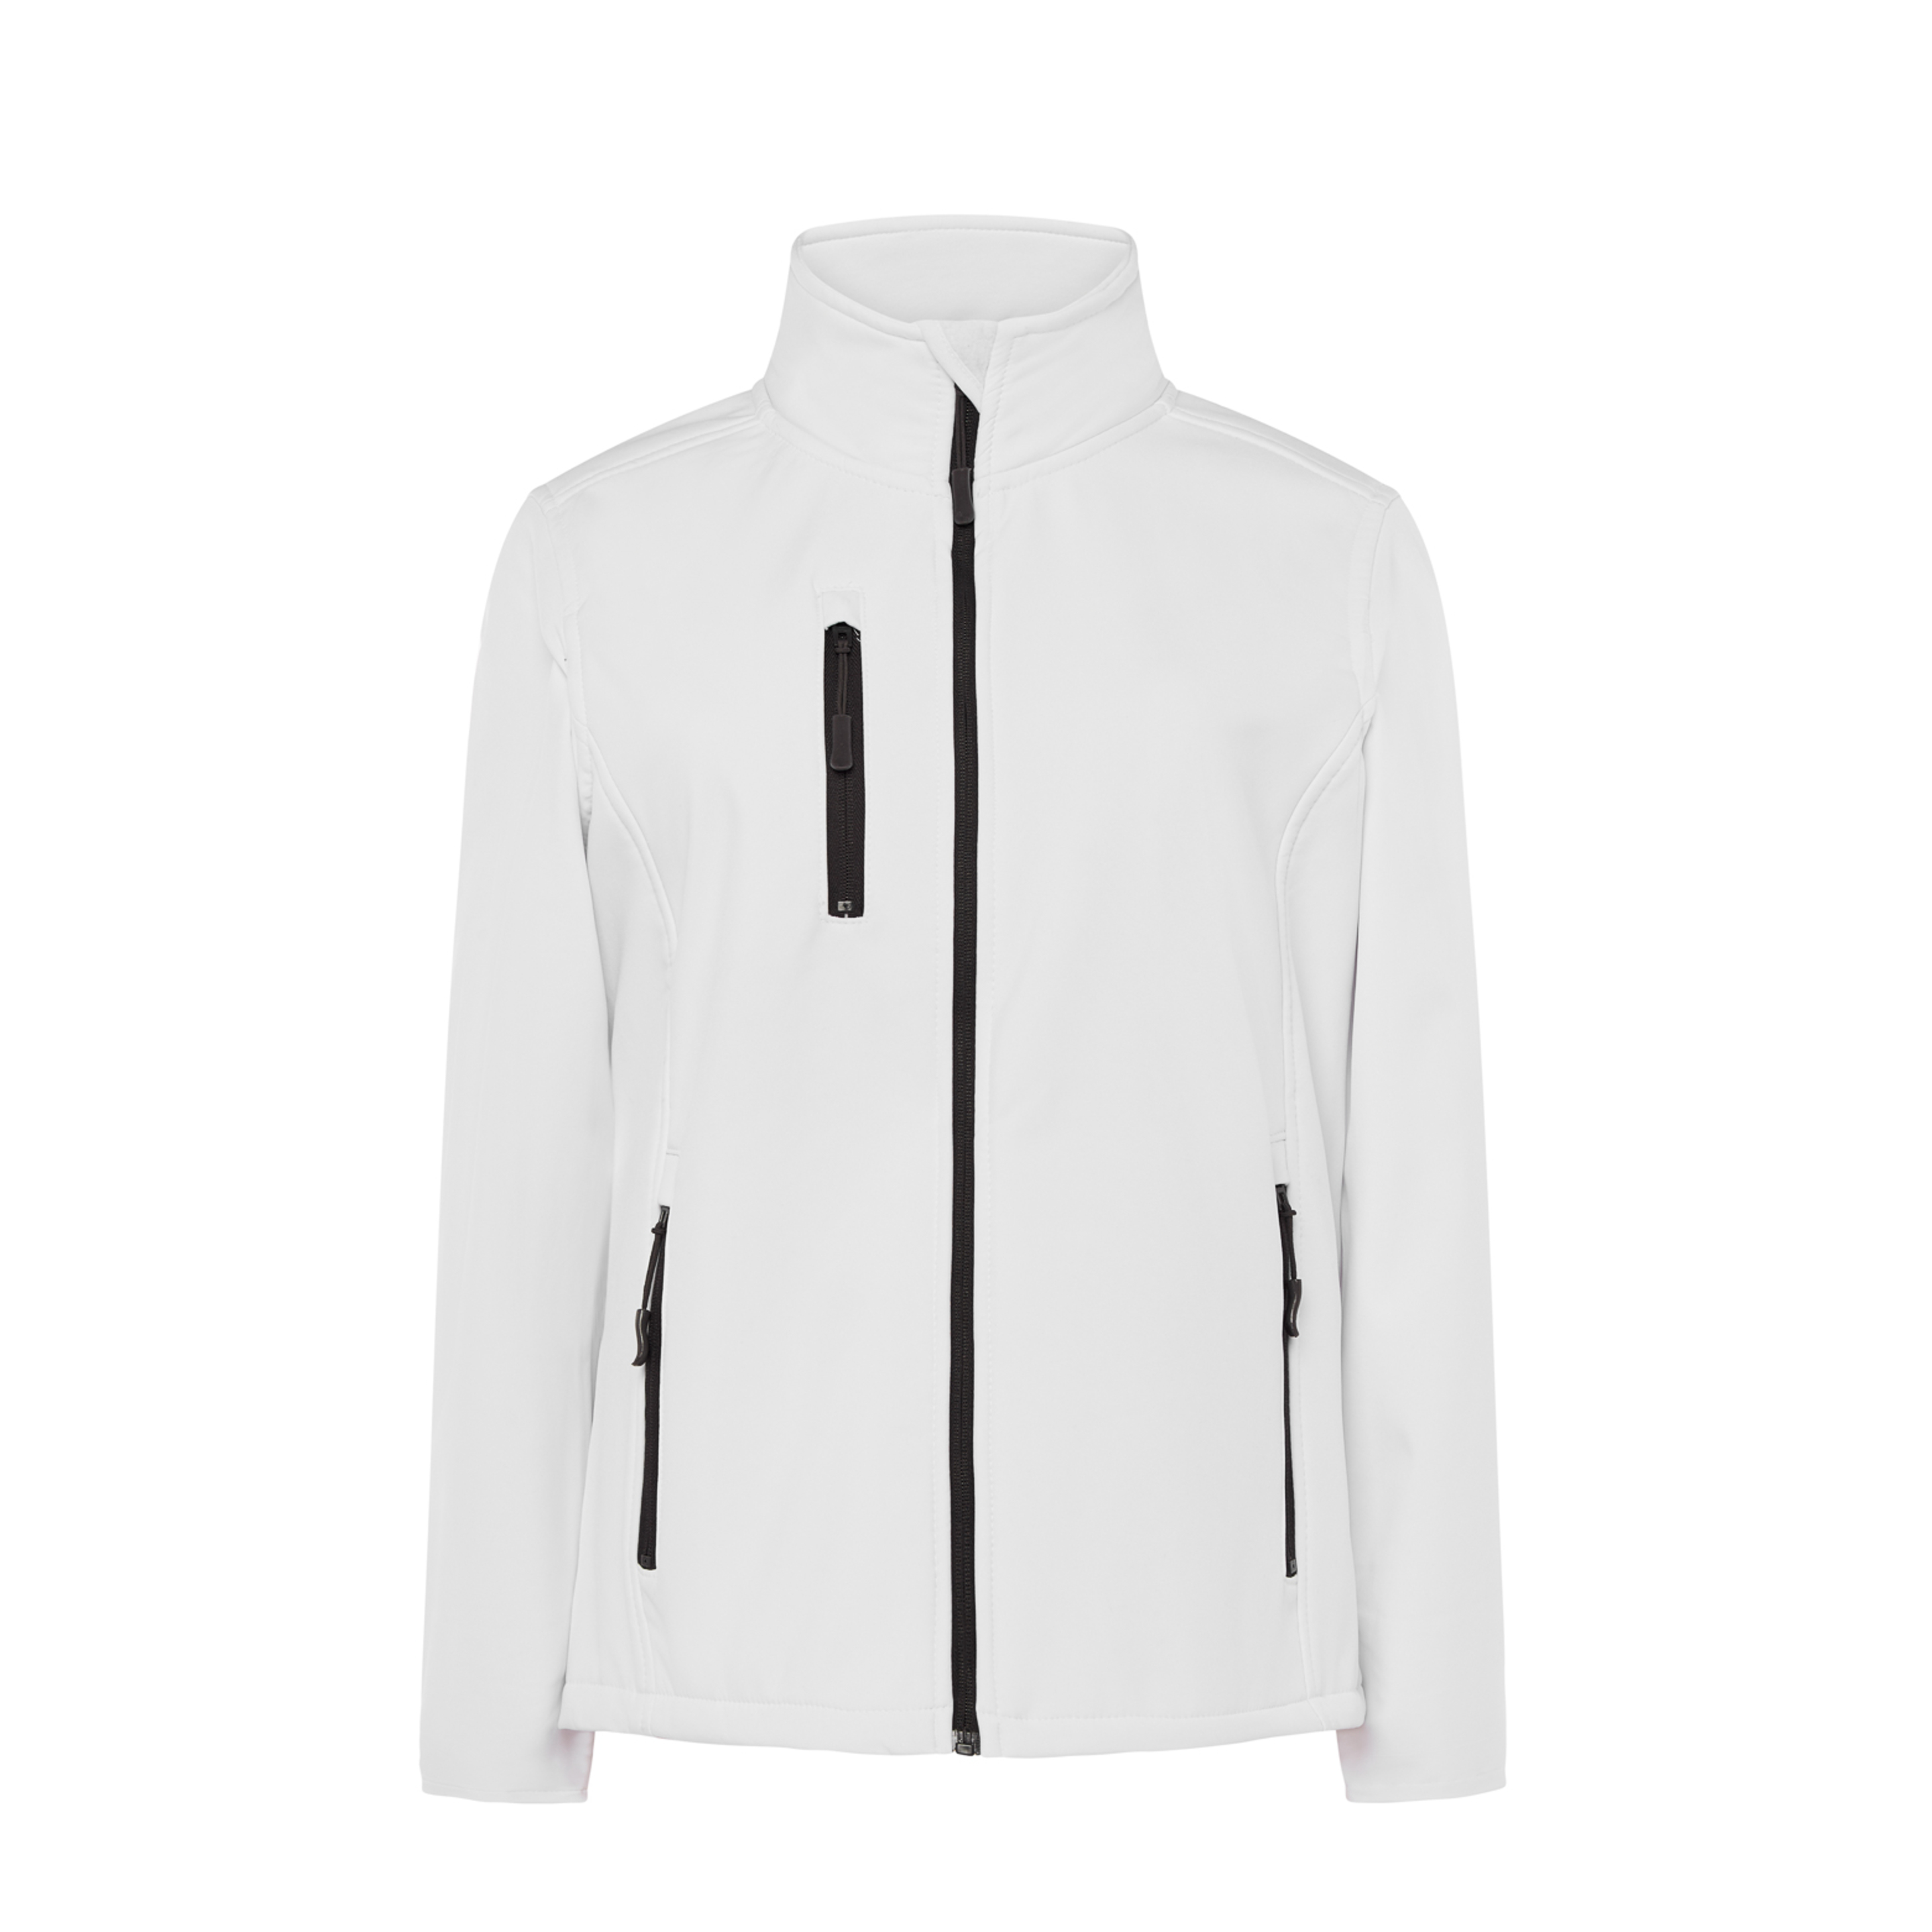 Chaqueta Softshell Jacket Jhk Shirts - blanco - 